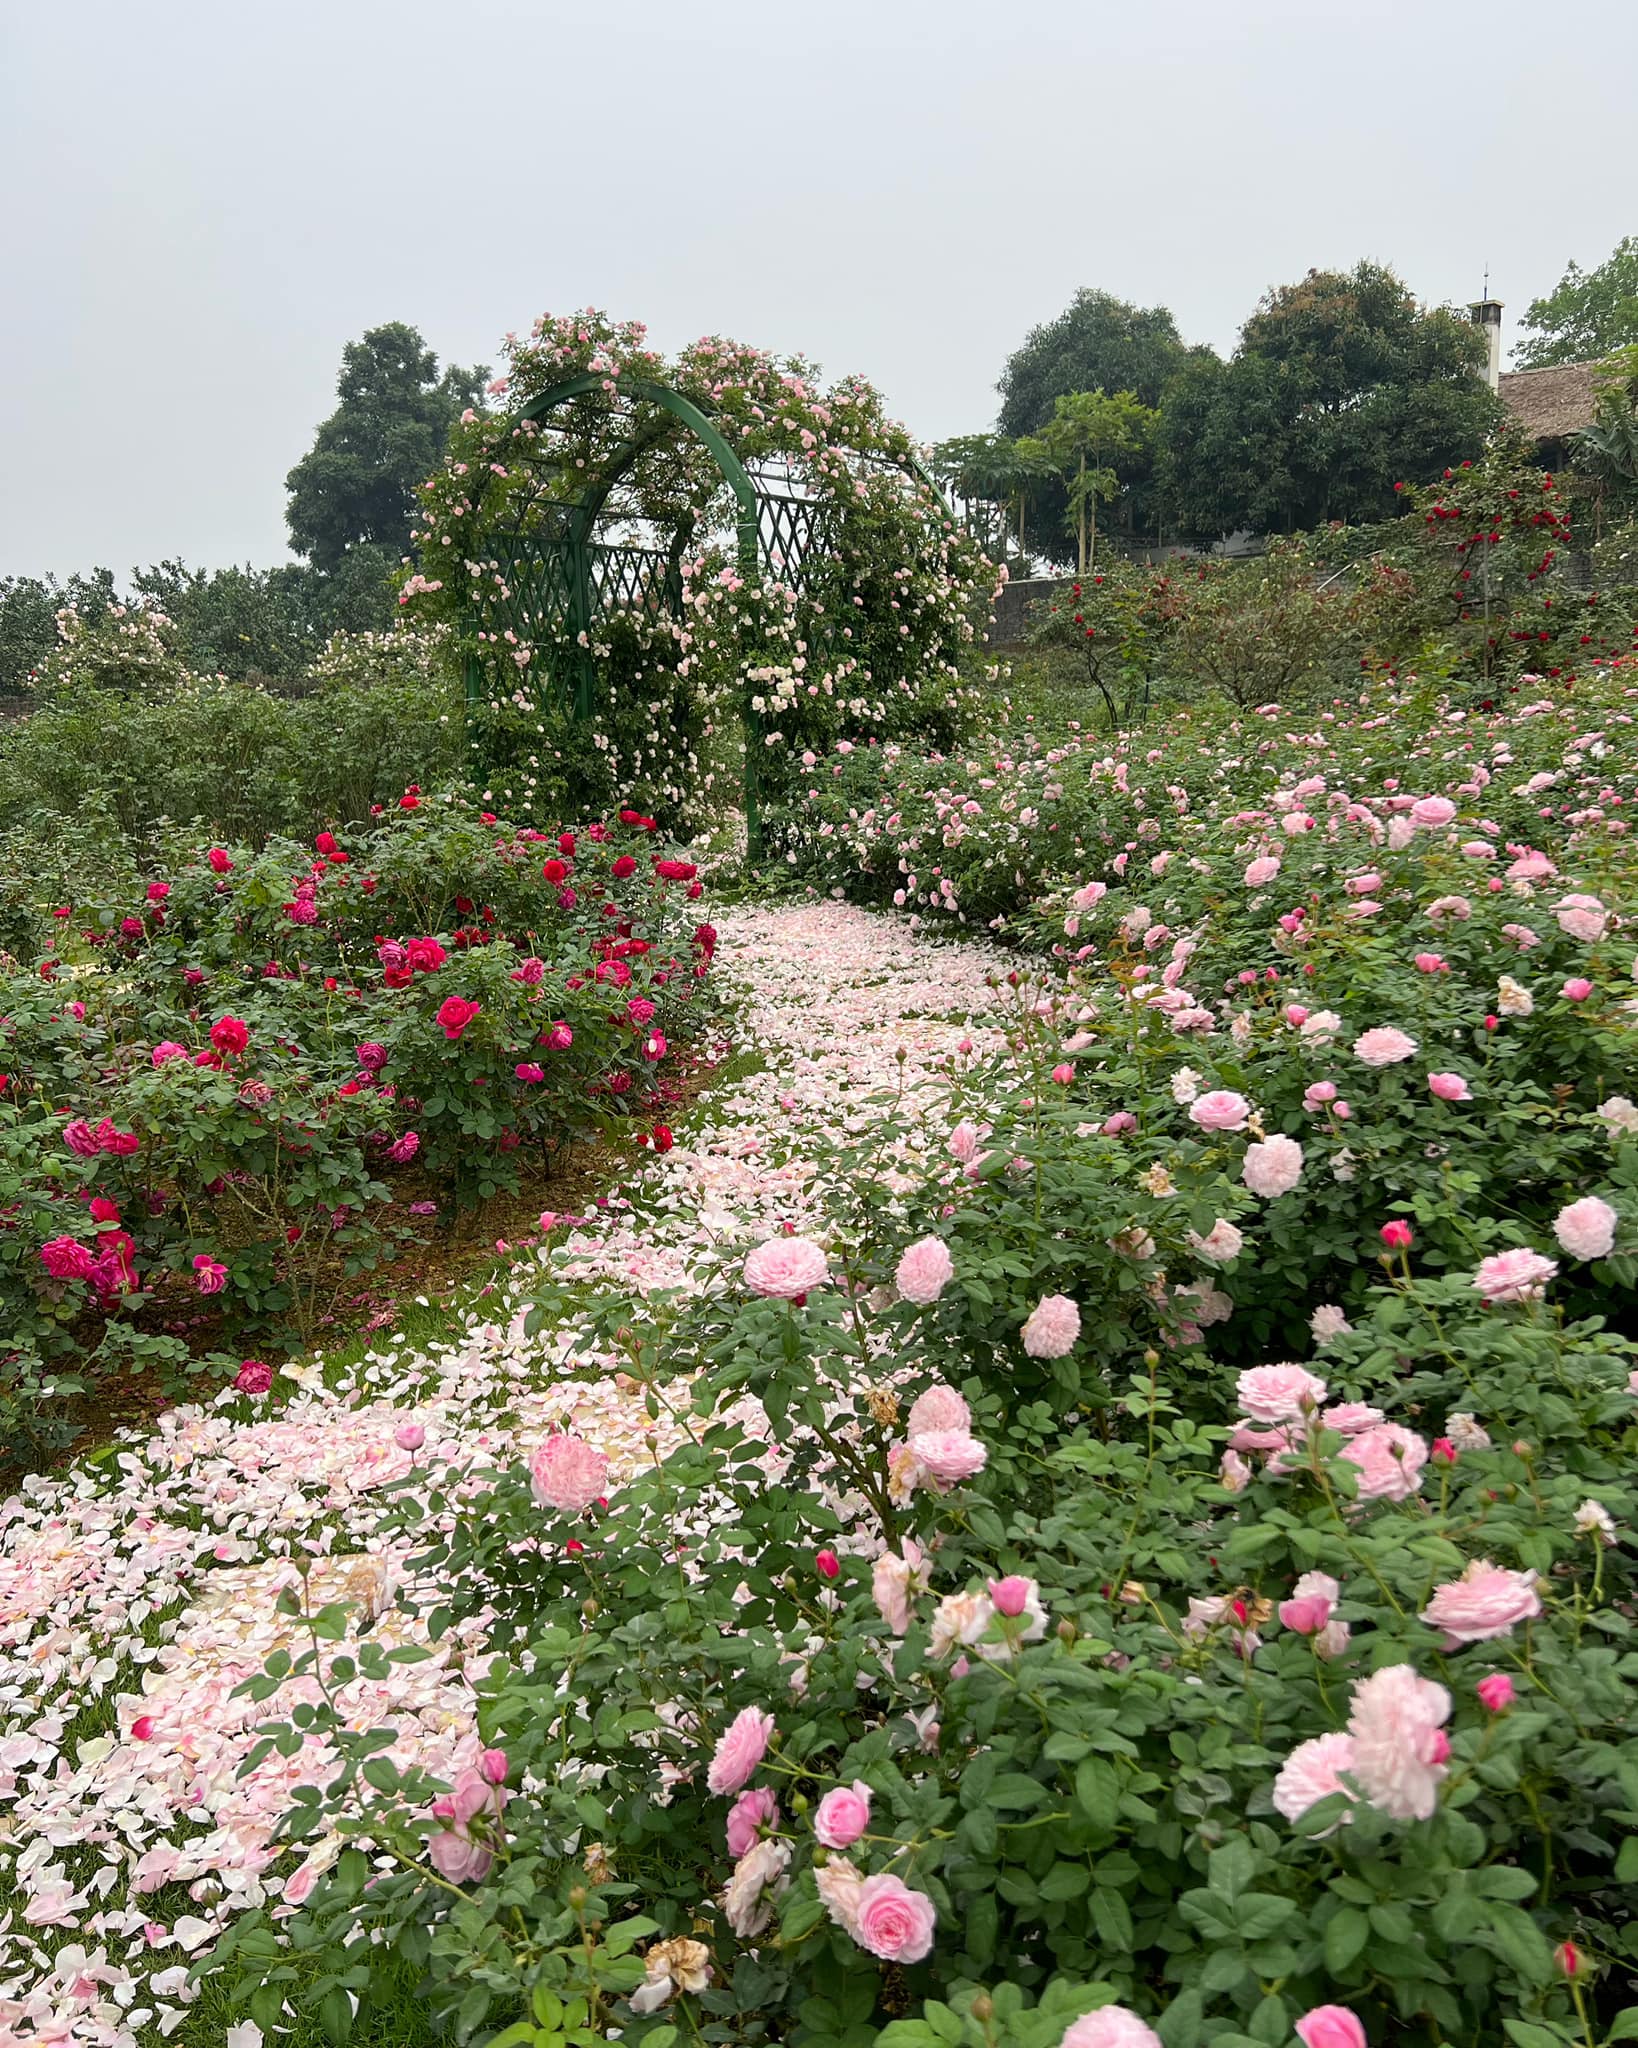 Mùng 3 Tết đến thăm vườn hồng rộng 6.000m² của người phụ nữ Hà Nội - Ảnh 9.